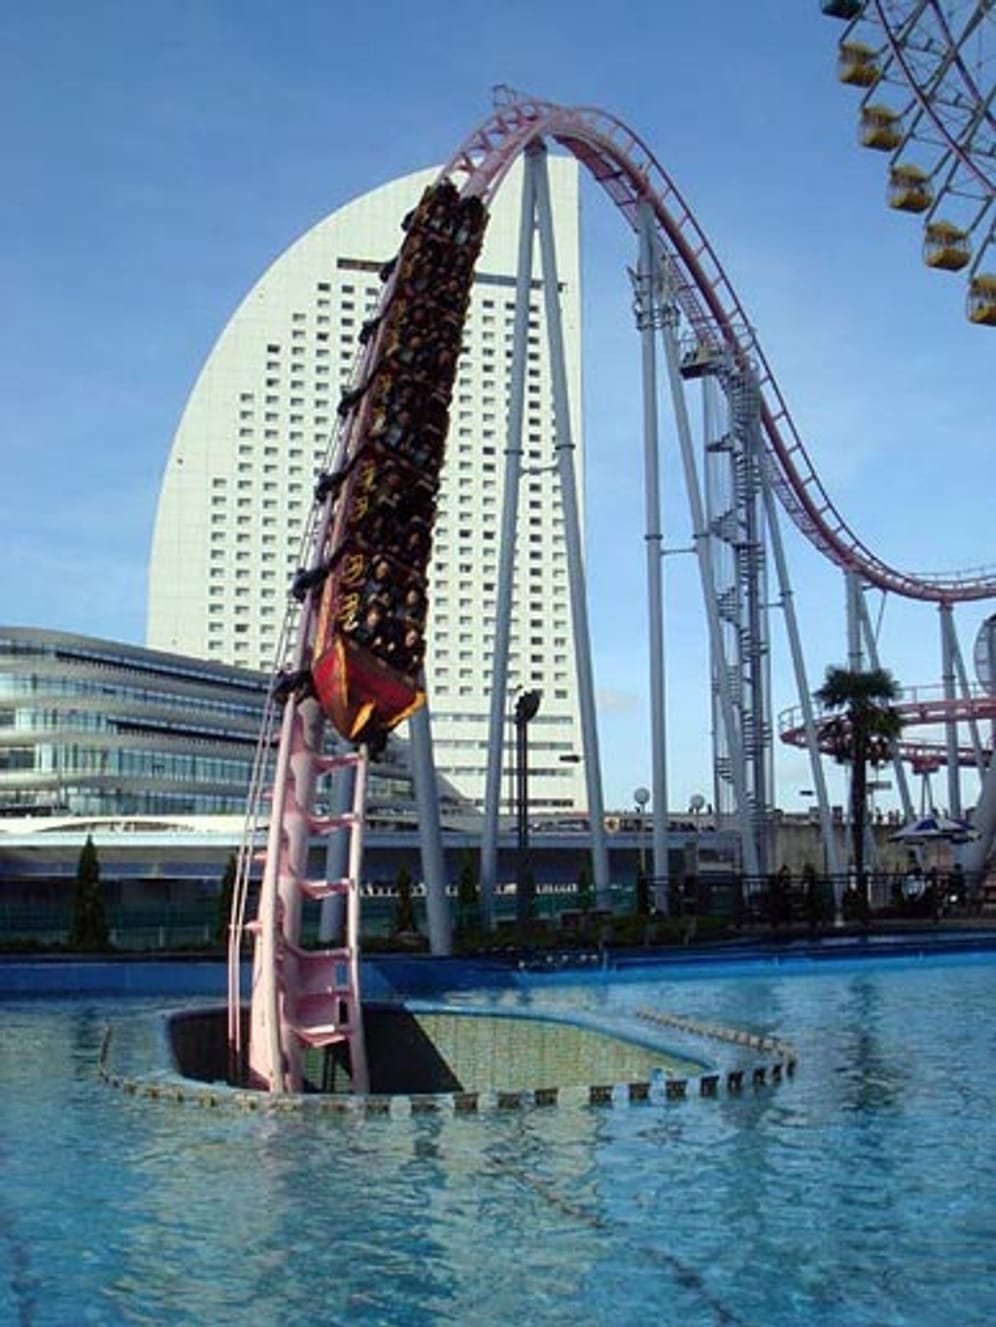 Der “Vanish Roller Coaster" in der Yokohama Cosmo World in Japan in dem Augenblick, bevor er abtaucht.